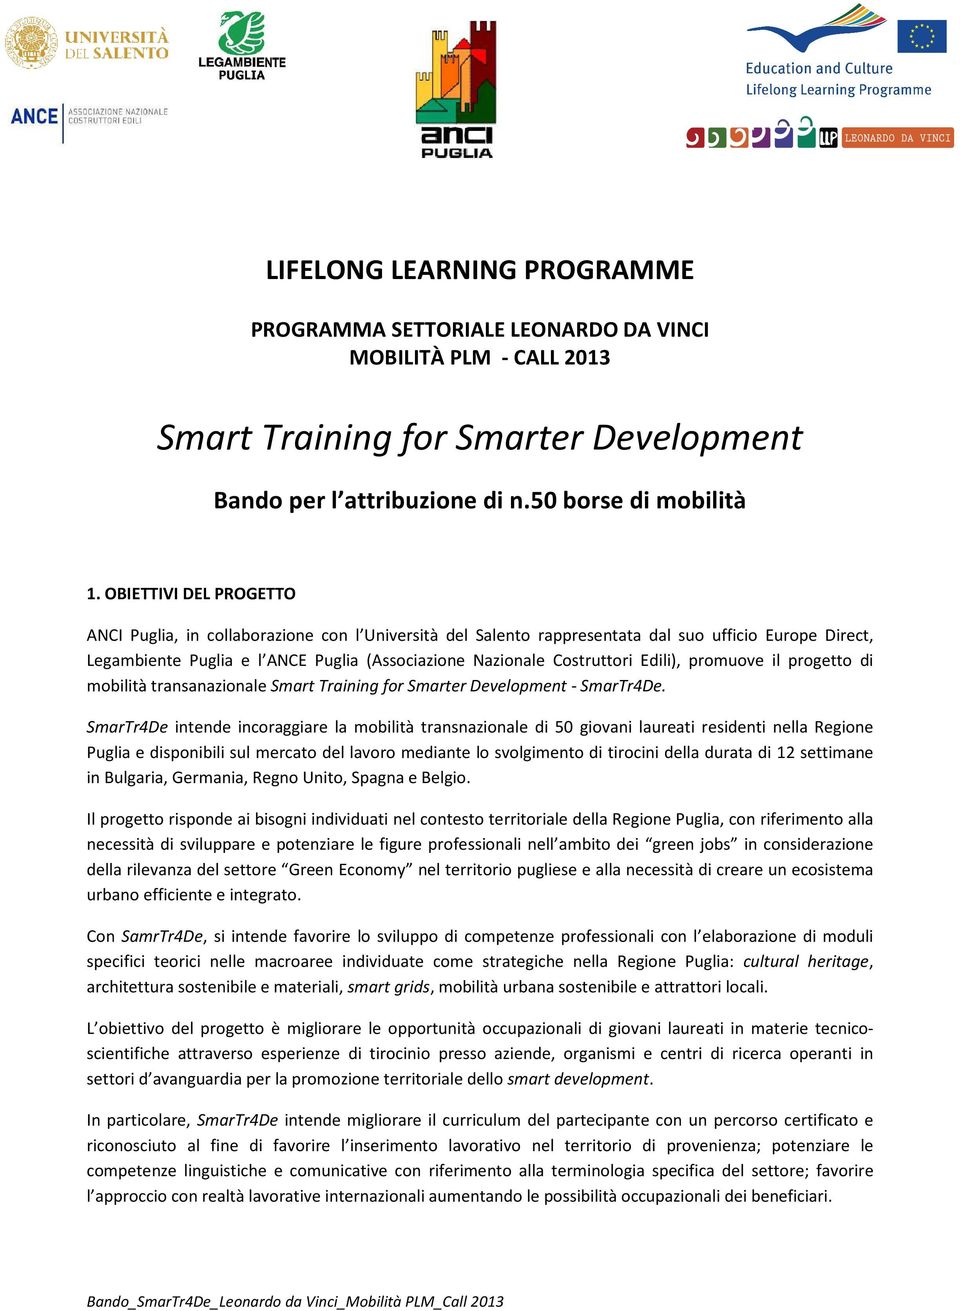 Edili), promuove il progetto di mobilità transanazionale Smart Training for Smarter Development - SmarTr4De.